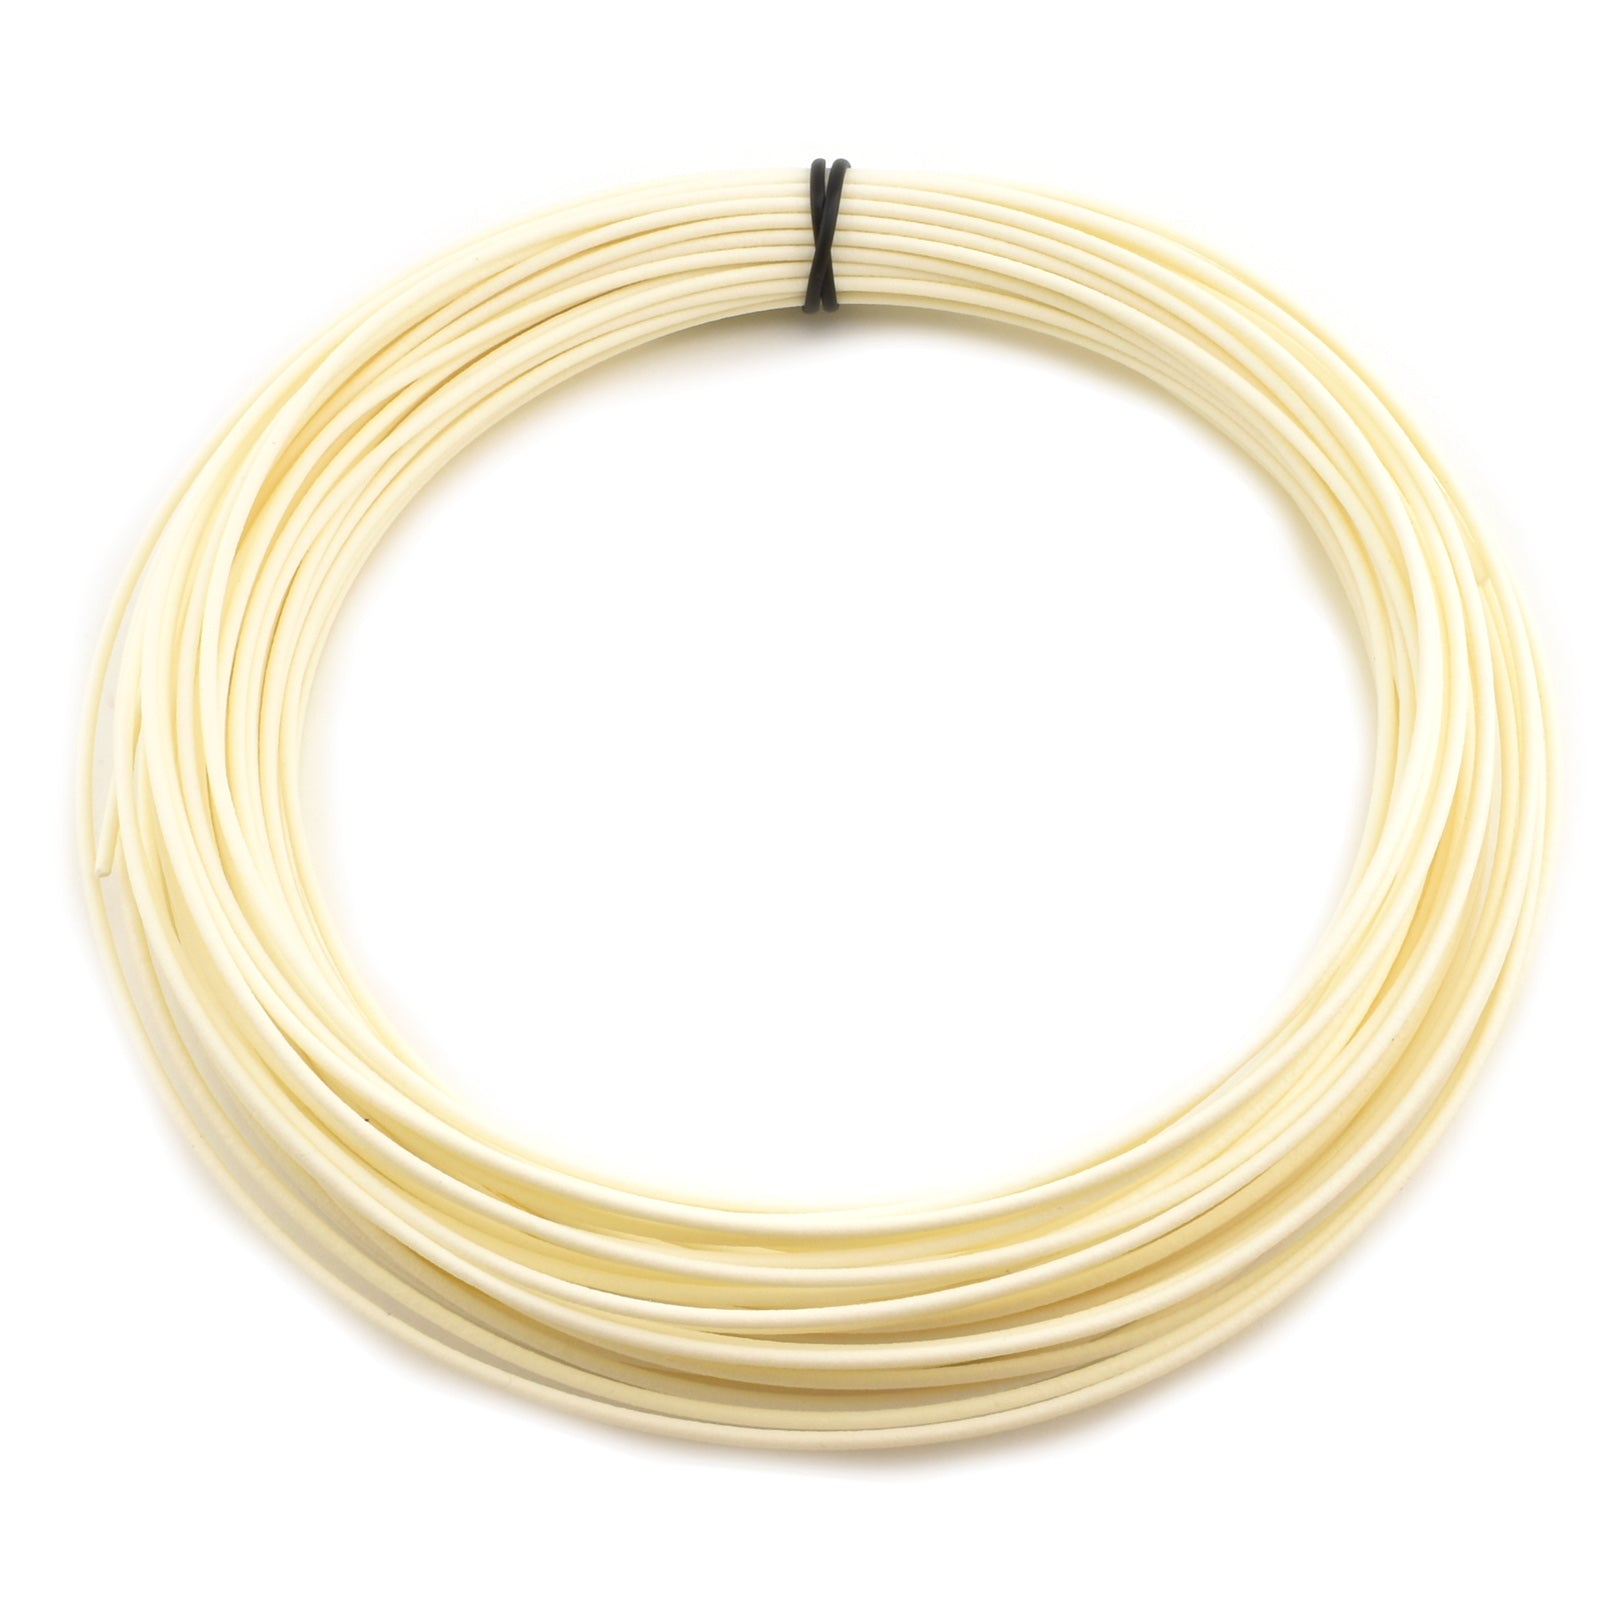 50g Coil Matte Fiber HTPLA - White Filament, 1.75mm - Micro - Mark Filament